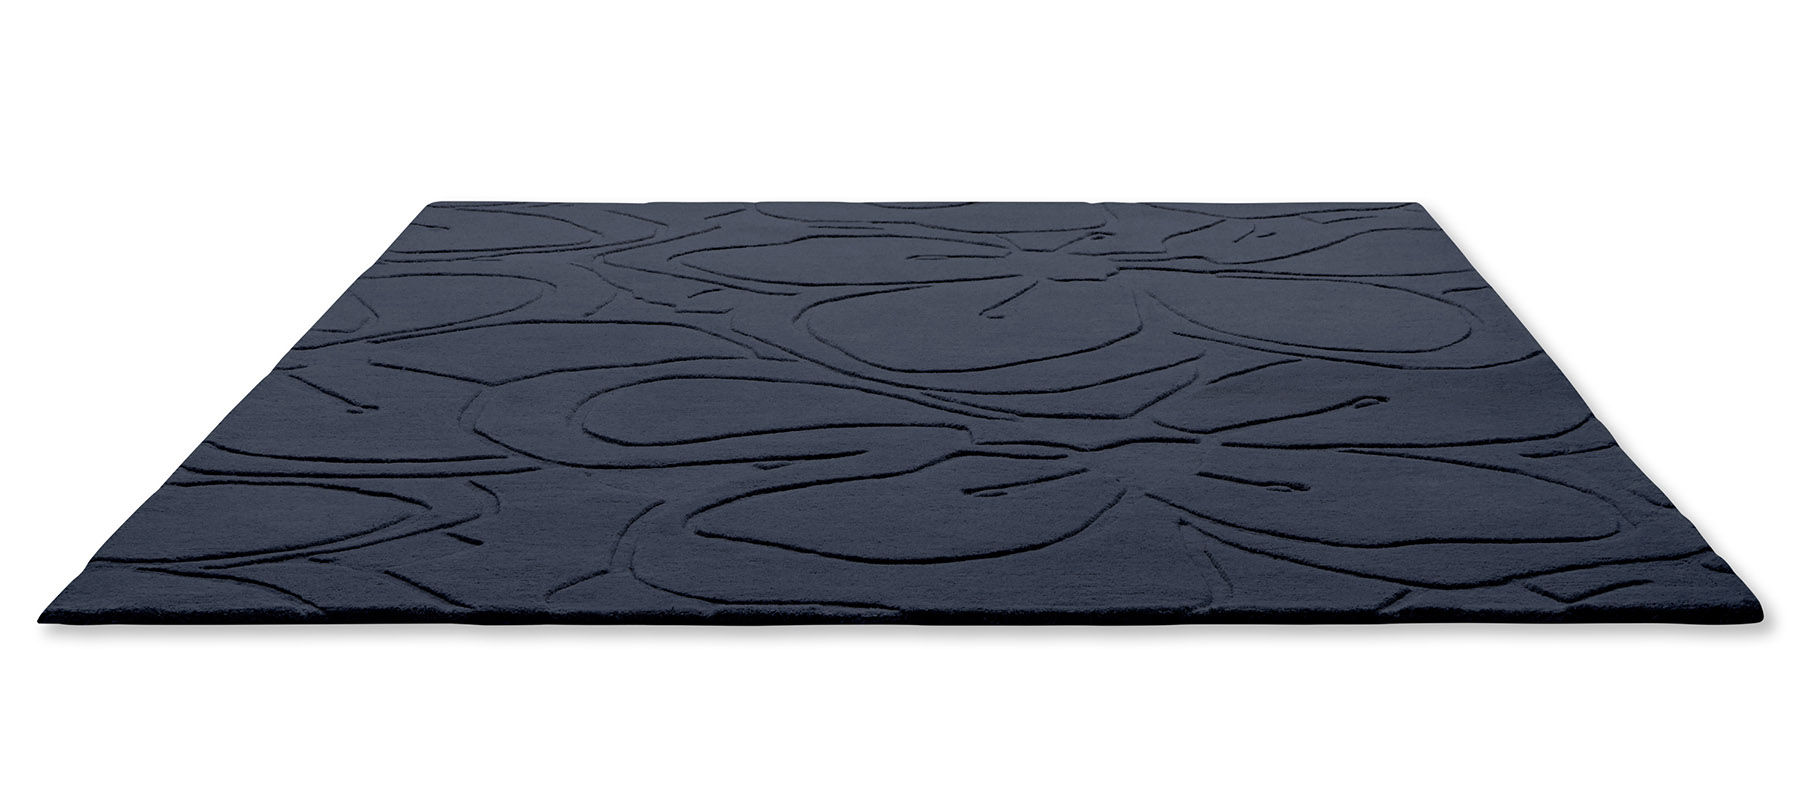 Romantic Magnolia Blue Designer Rug ☞ Size: 5' 7" x 8' (170 x 240 cm)